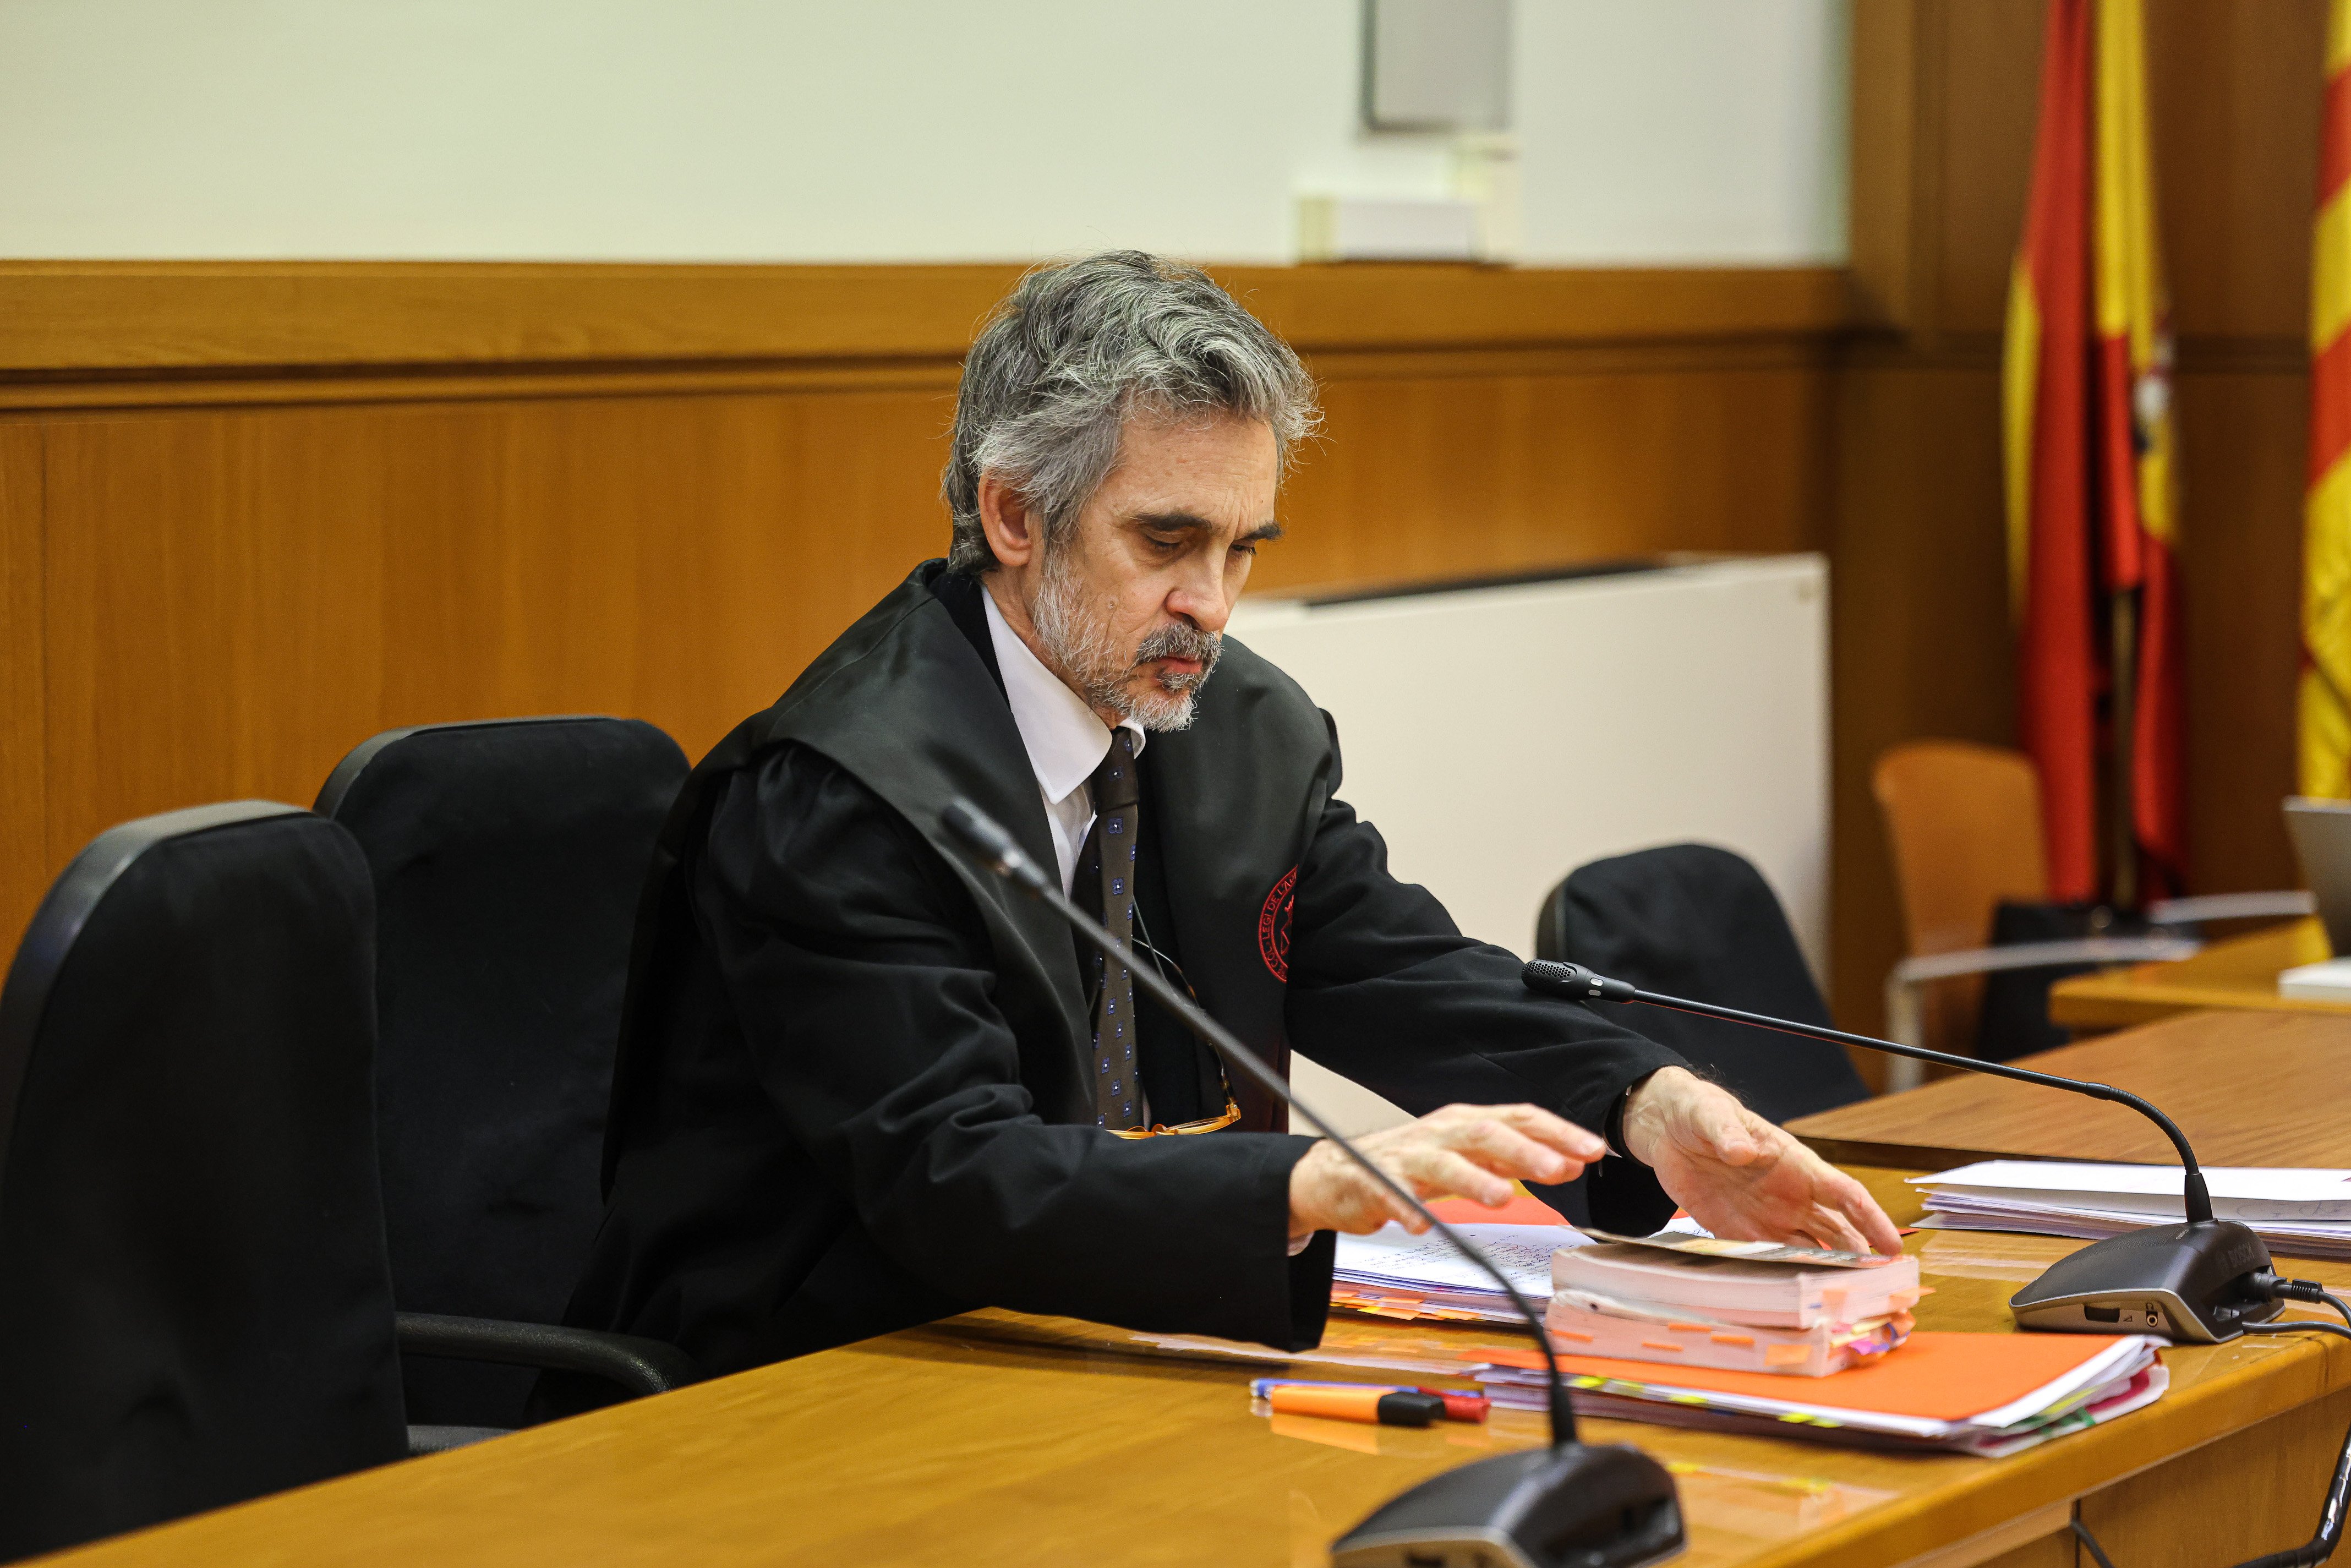 El abogado Dani Alves Cristobal Martell vista Audiencia de Barcelona ACN